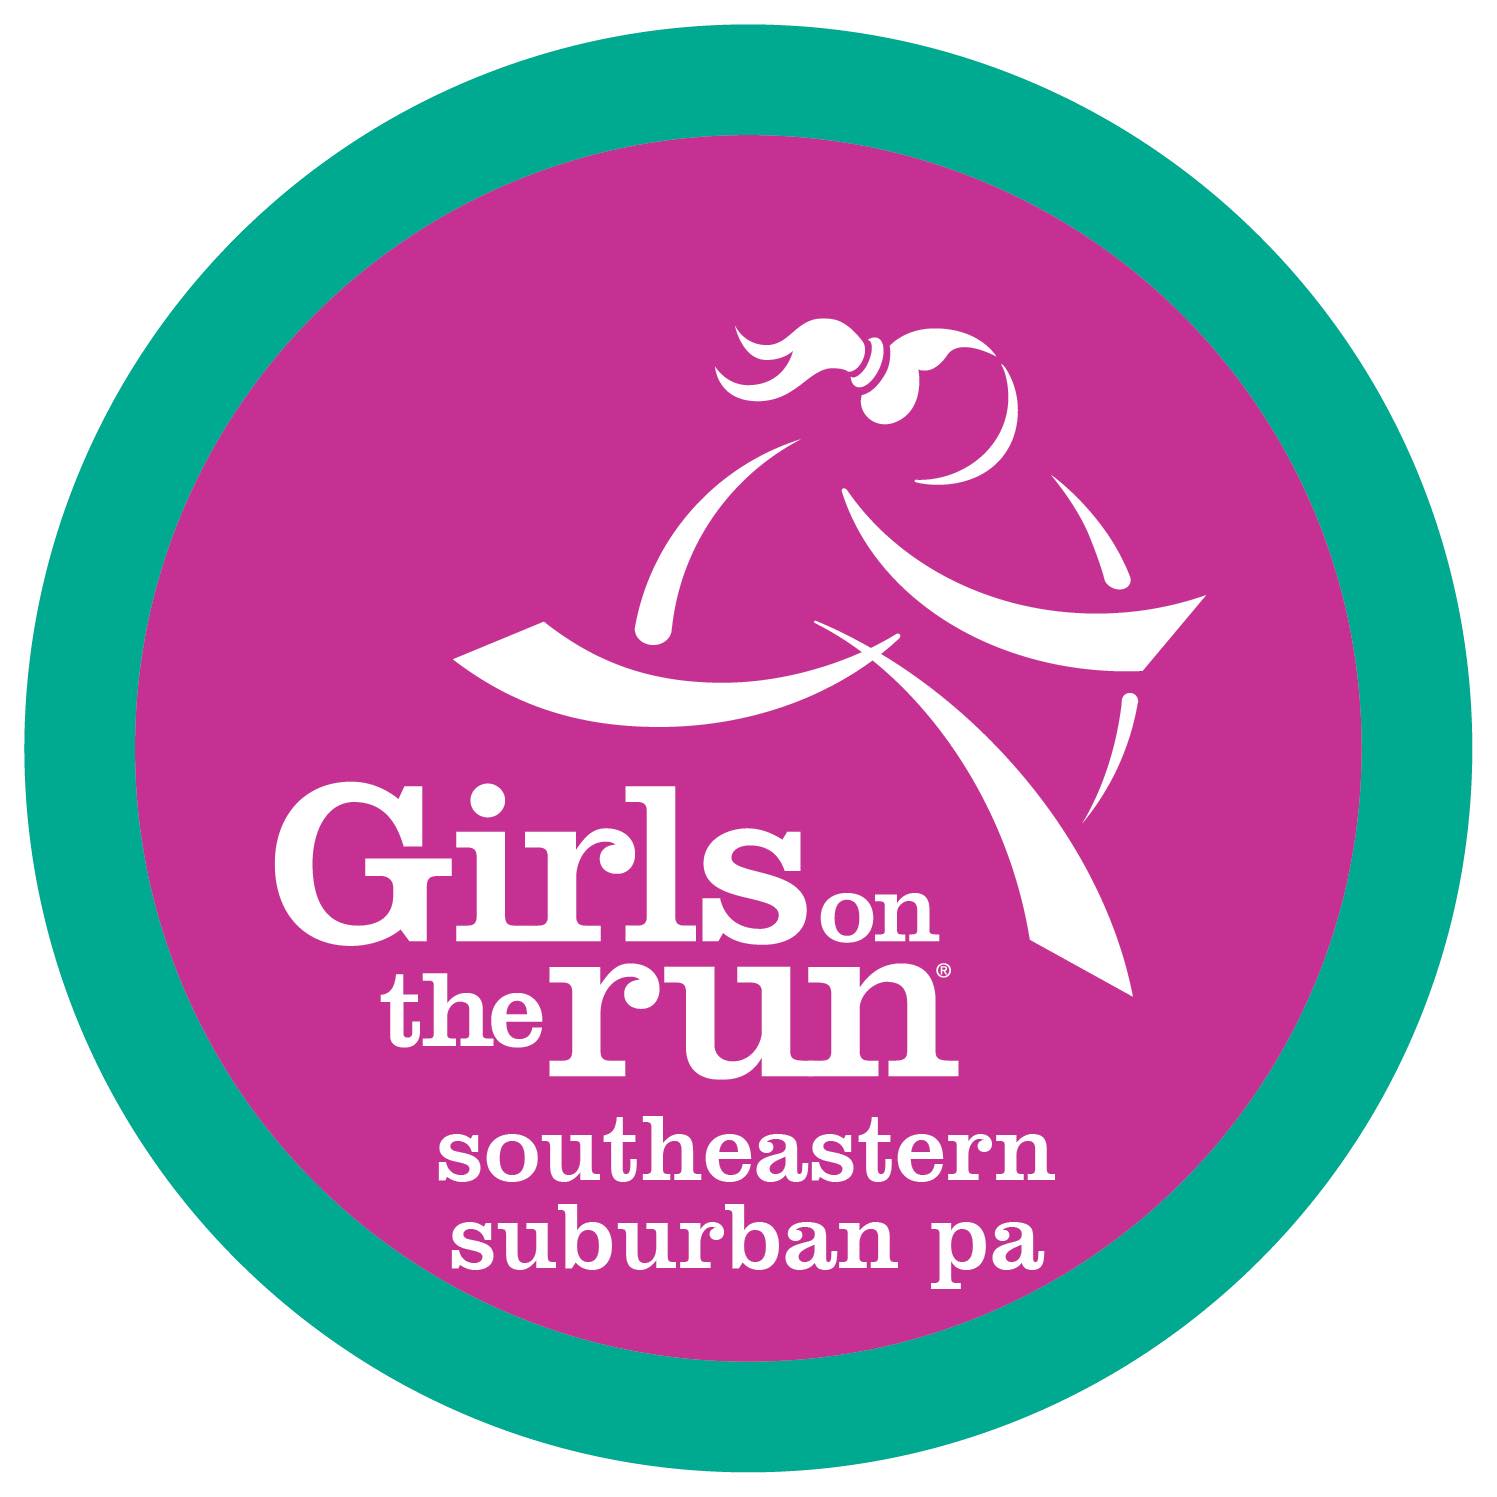 Girls on the Run Southeastern Suburban PA